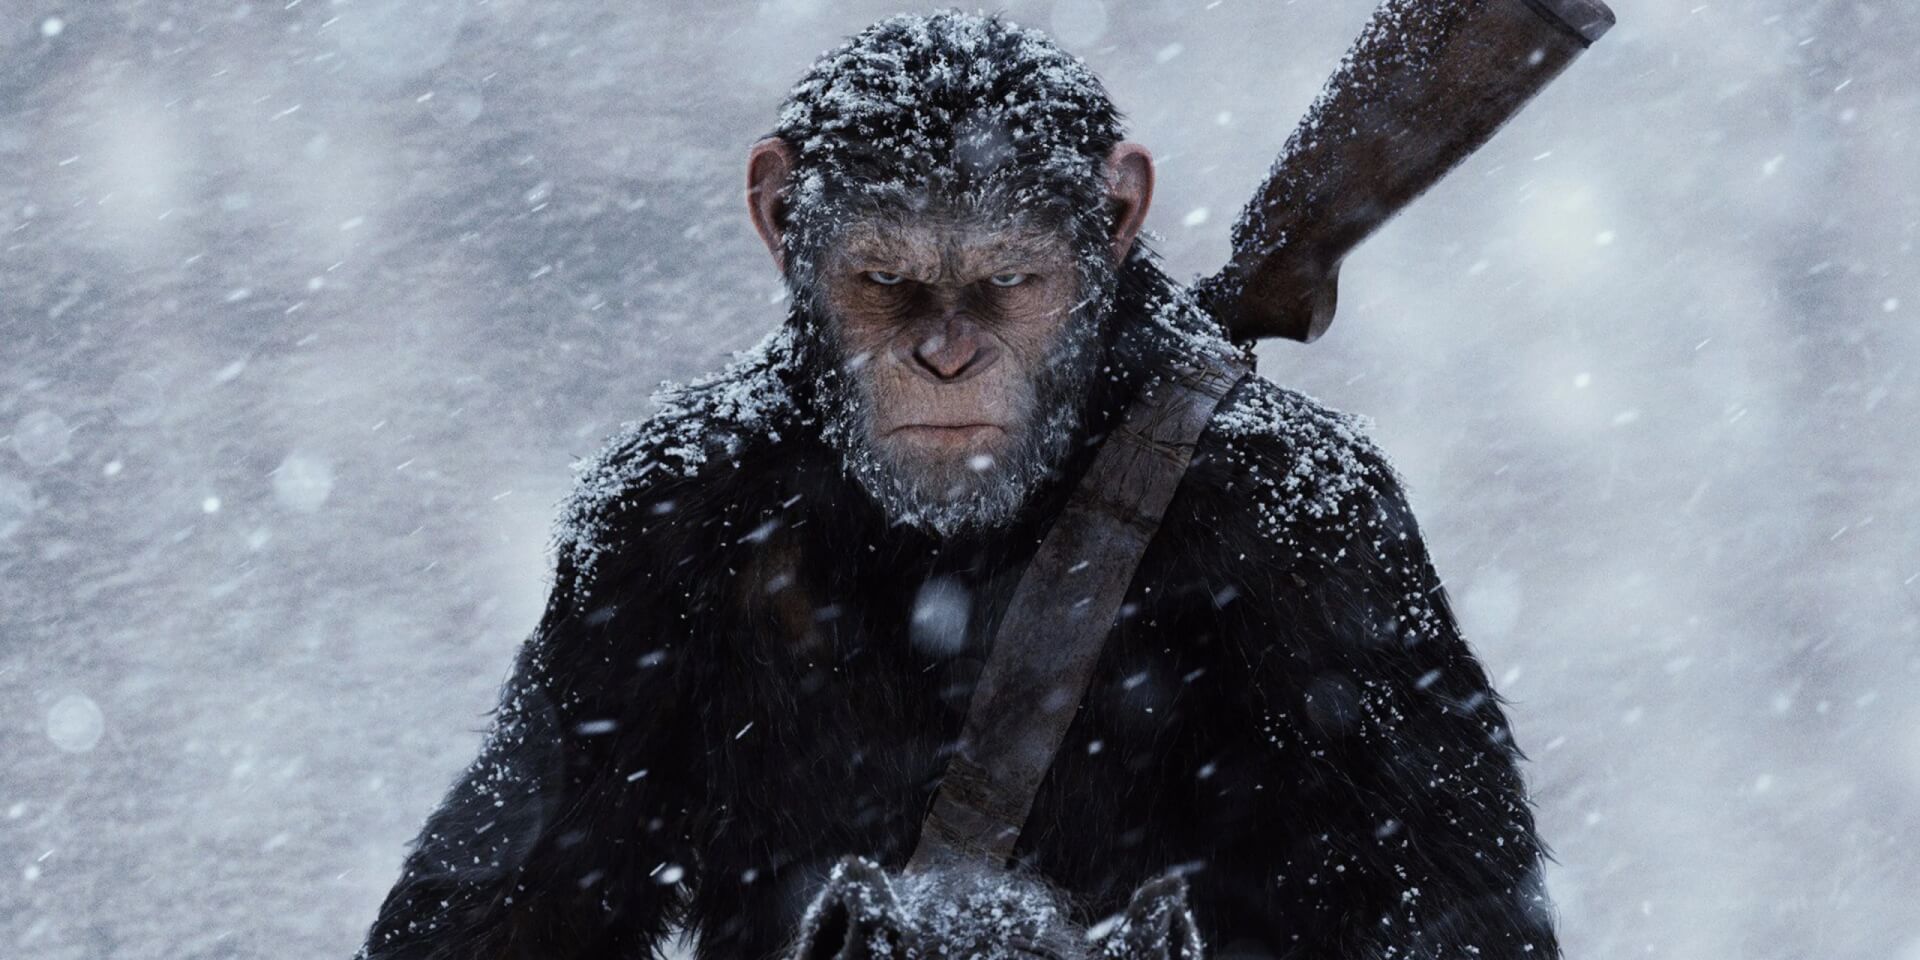 Bejelentették az új A majmok bolygója filmcímét, a szereplőgárdát és az első képet is megosztották